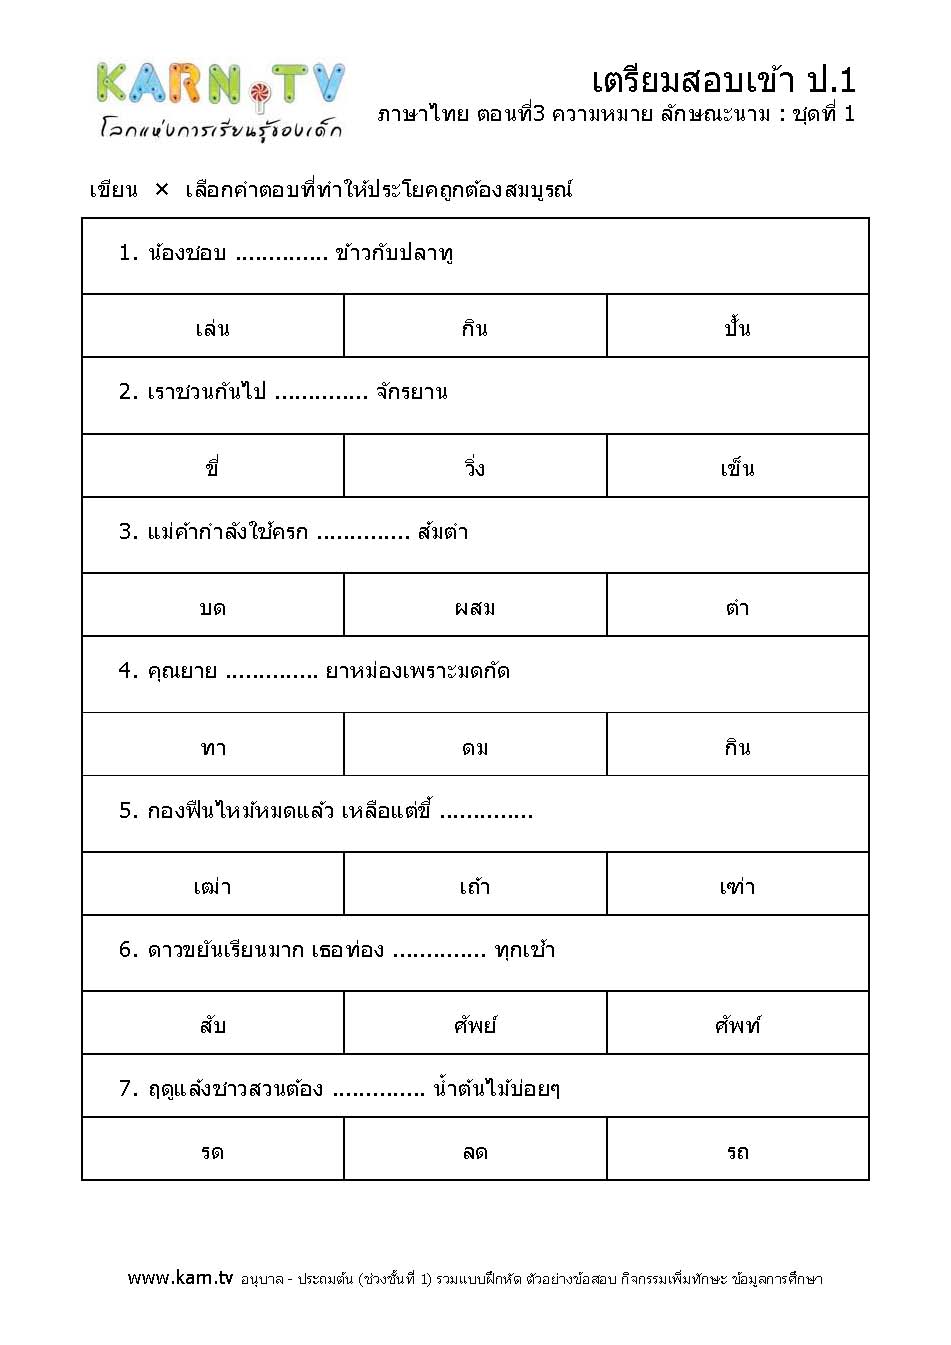 ภาษาไทย 3 ความหมาย ลักษณะนาม ชุด 1